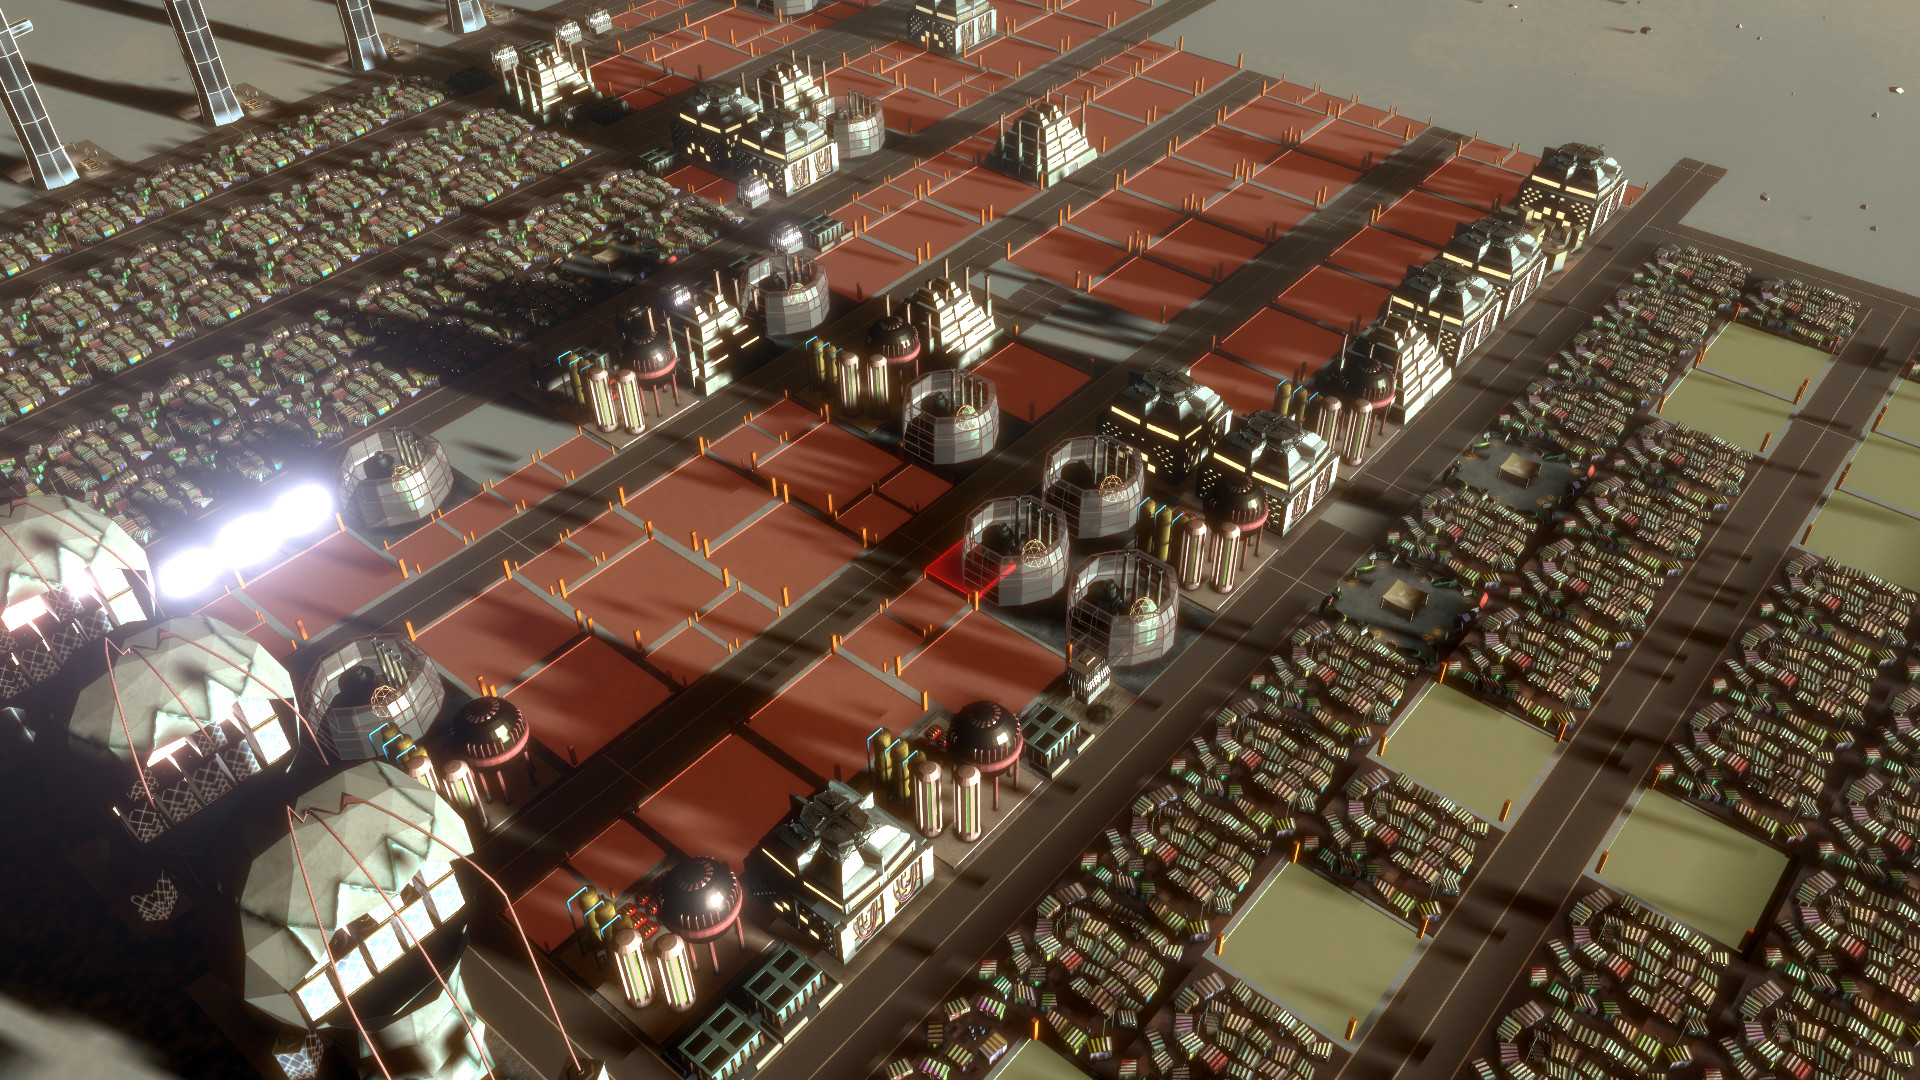 Skid Cities screenshot